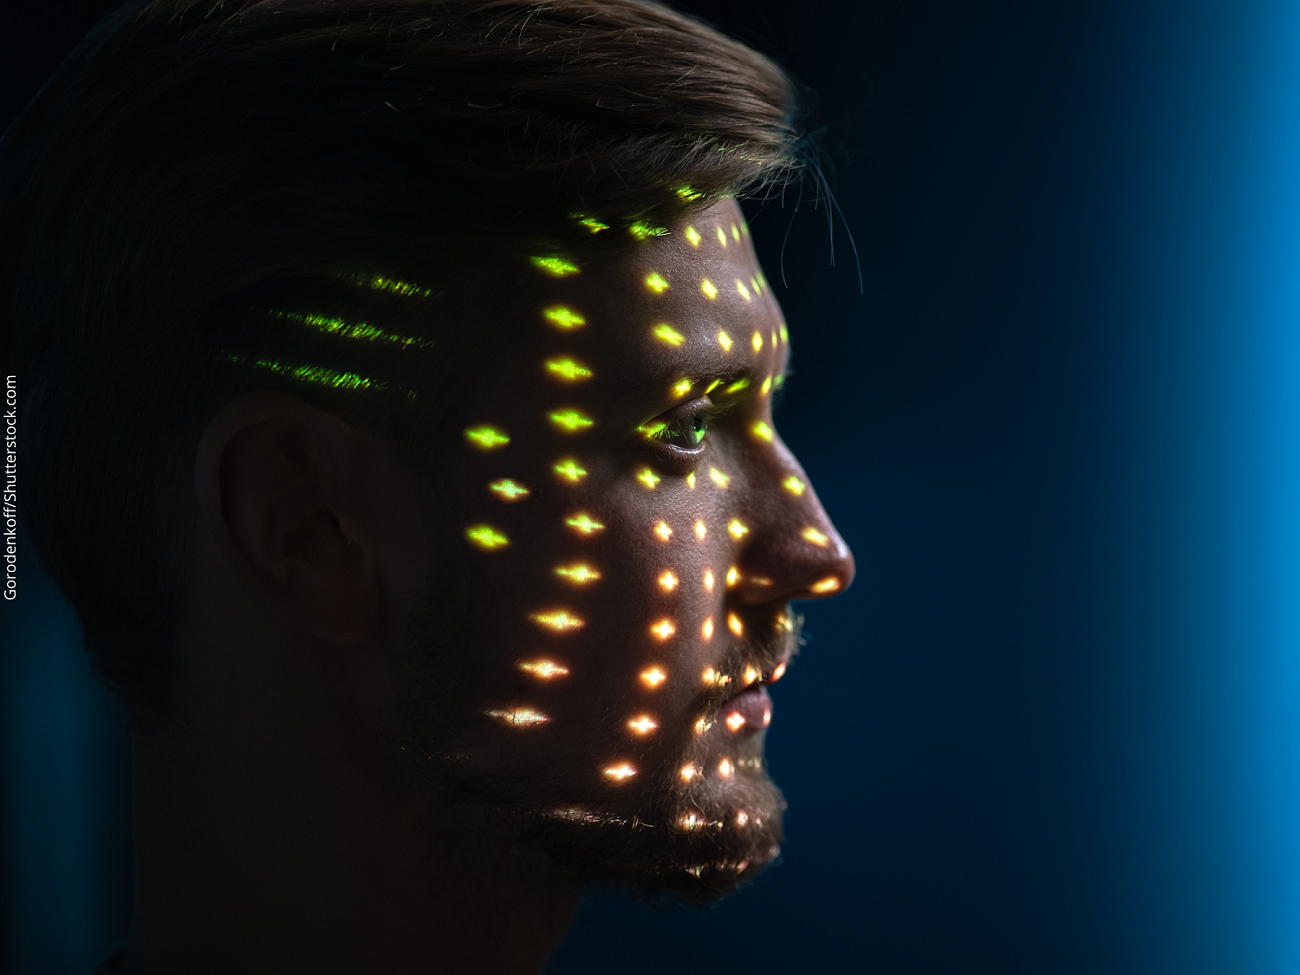 ArieI Halpern: IA para detecção facial melhora reconhecimento de tons de pele